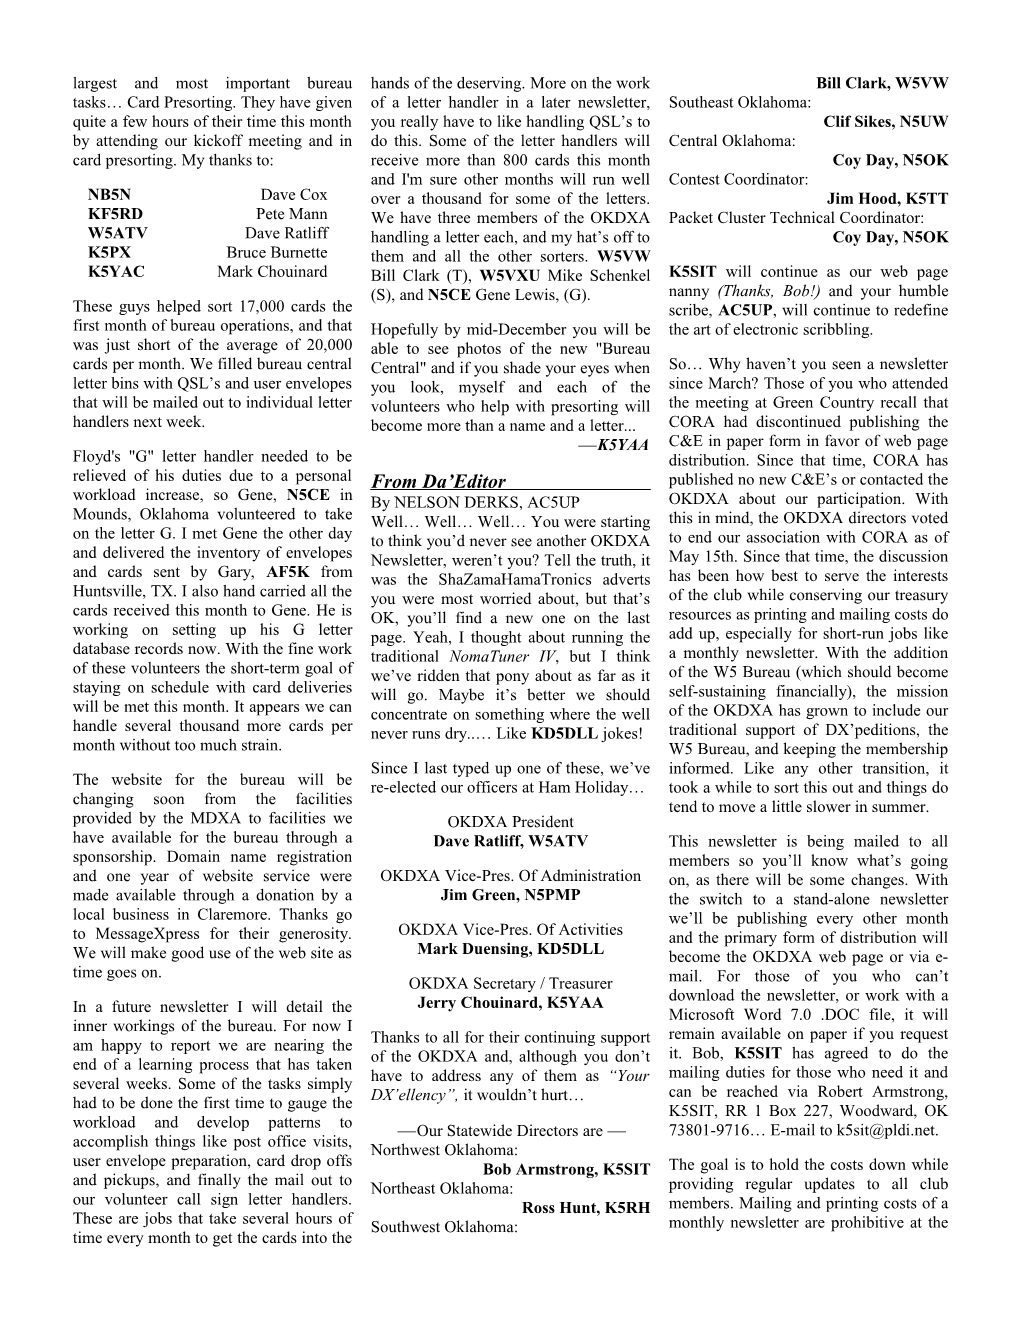 OKDXA Newsletter for November / December 2002